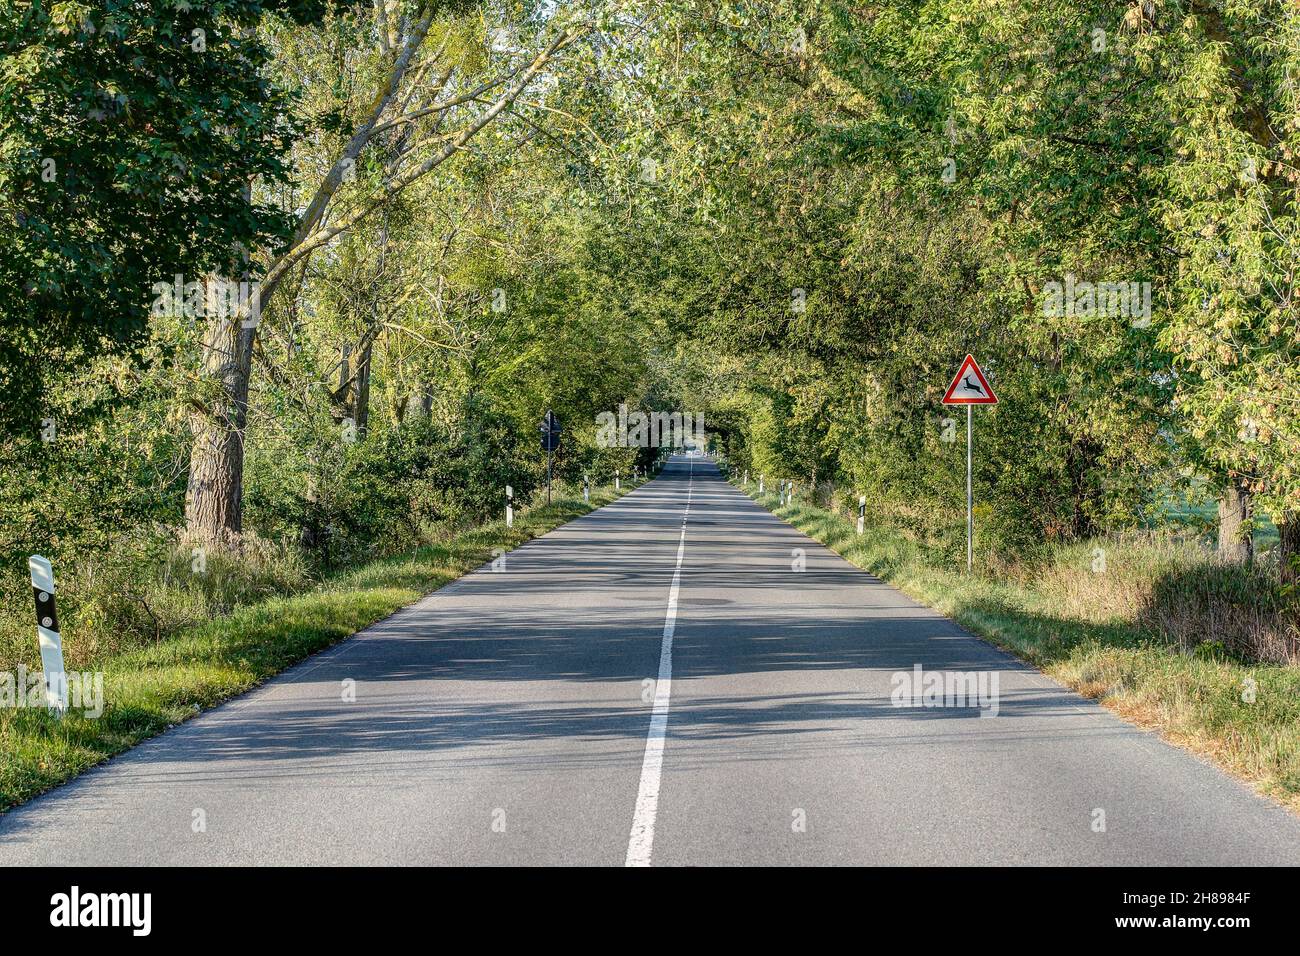 Tree Avenues ha bordeado las calles durante siglos y son parte de la cultura del paisaje en Alemania. Foto de stock